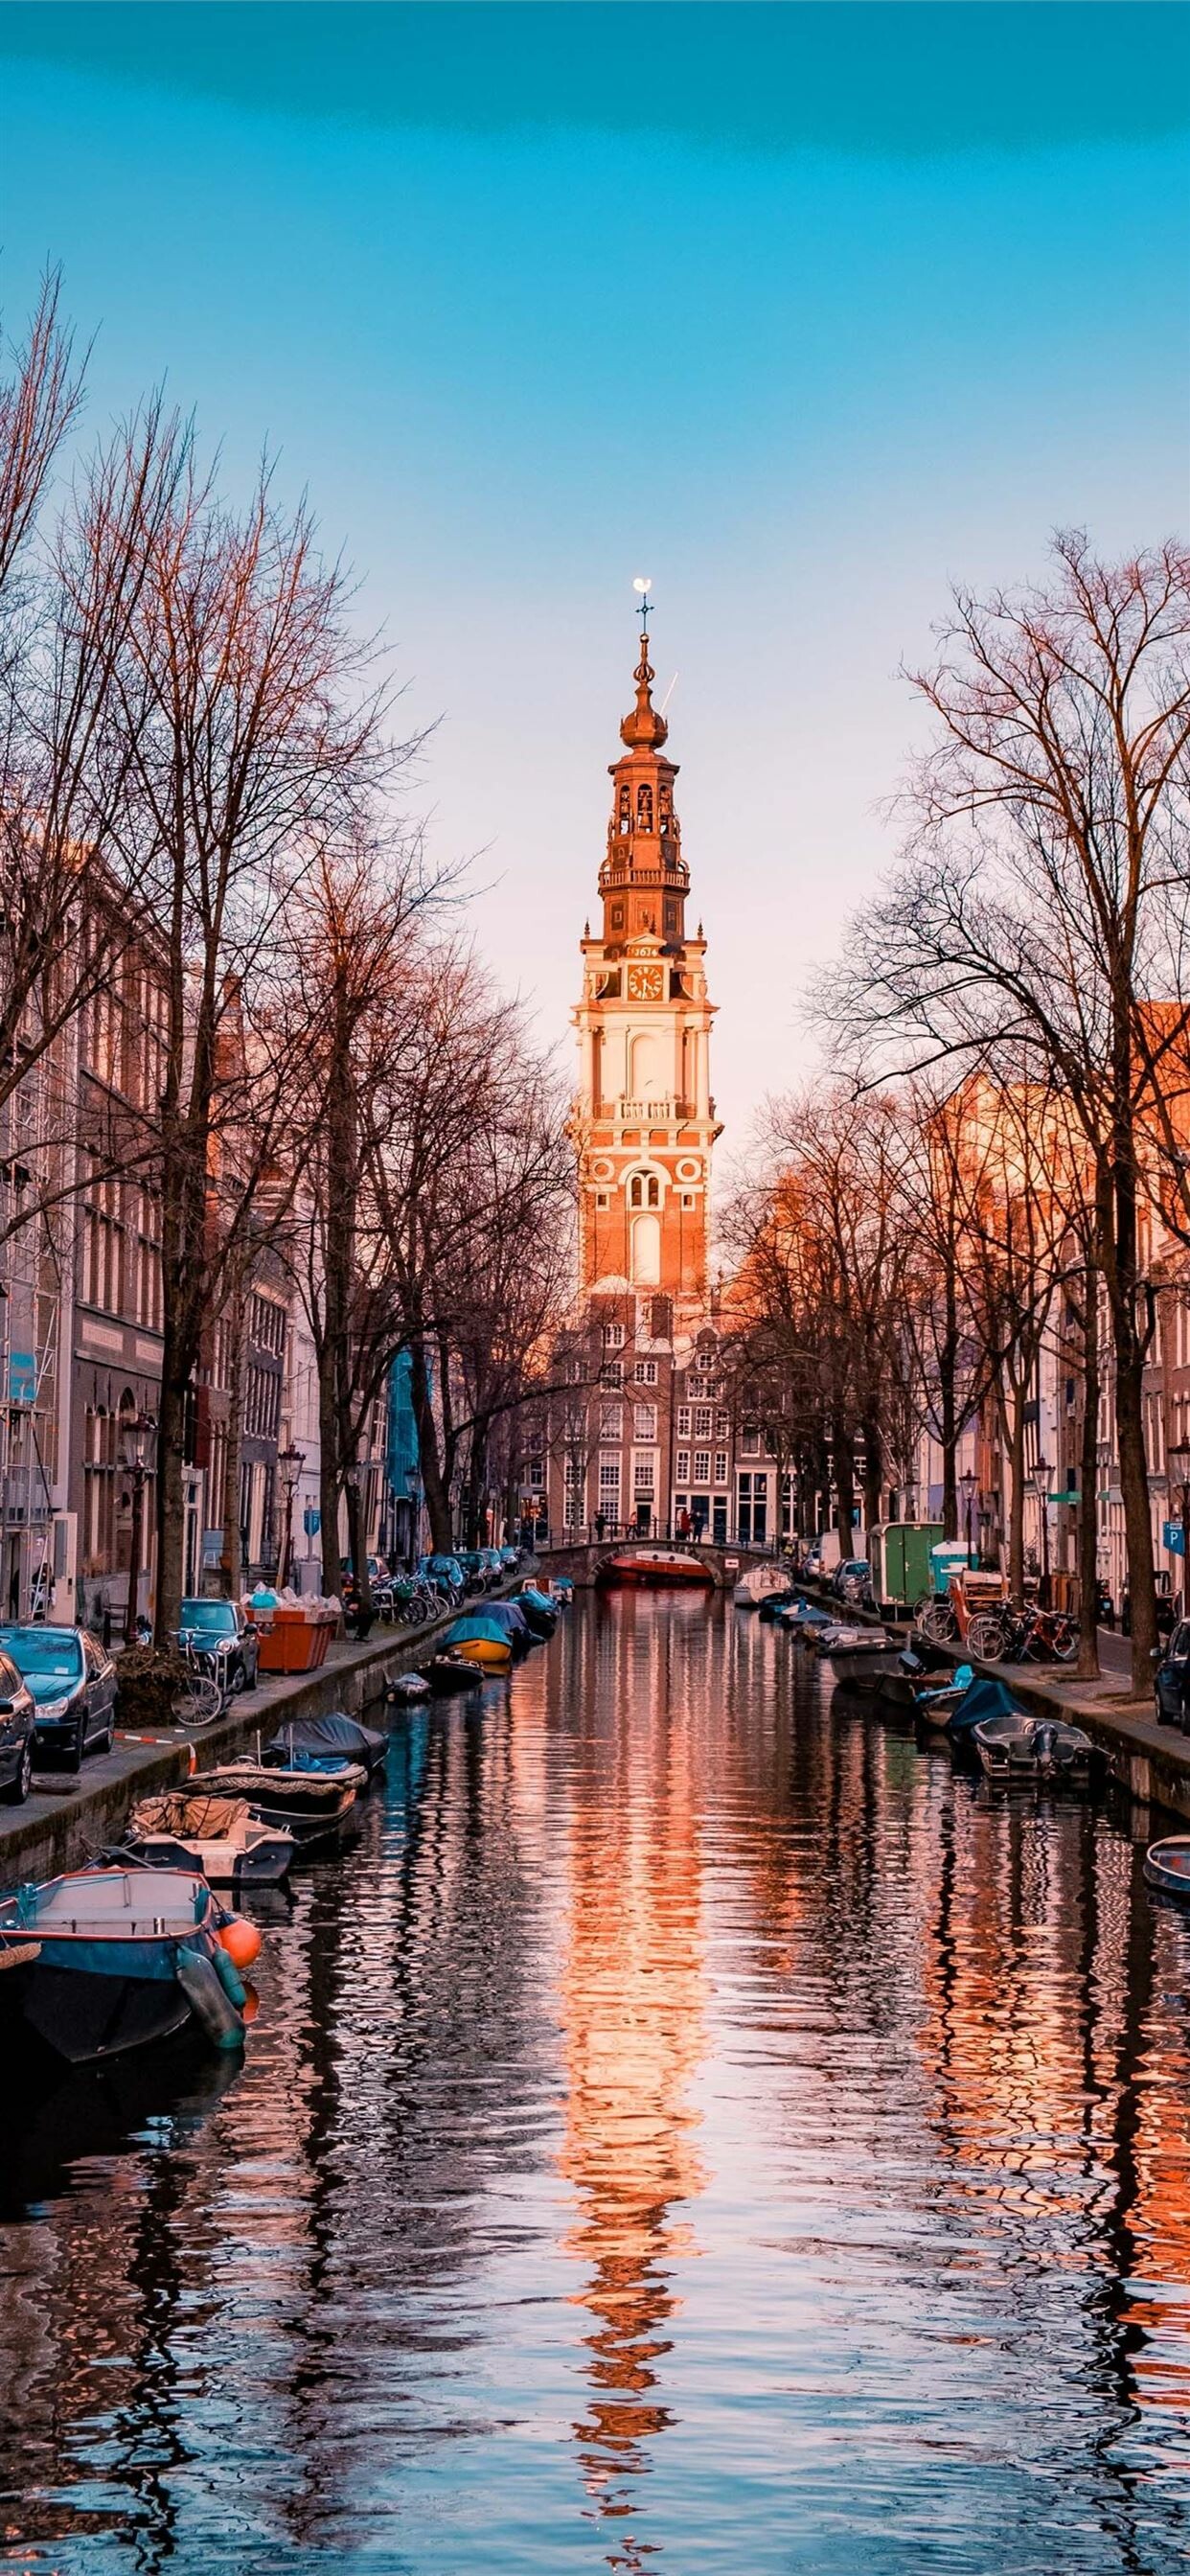 Netherlands: Amsterdam, Zuiderkerk, A 17th-century Protestant church in the Nieuwmarkt area. 1250x2690 HD Wallpaper.